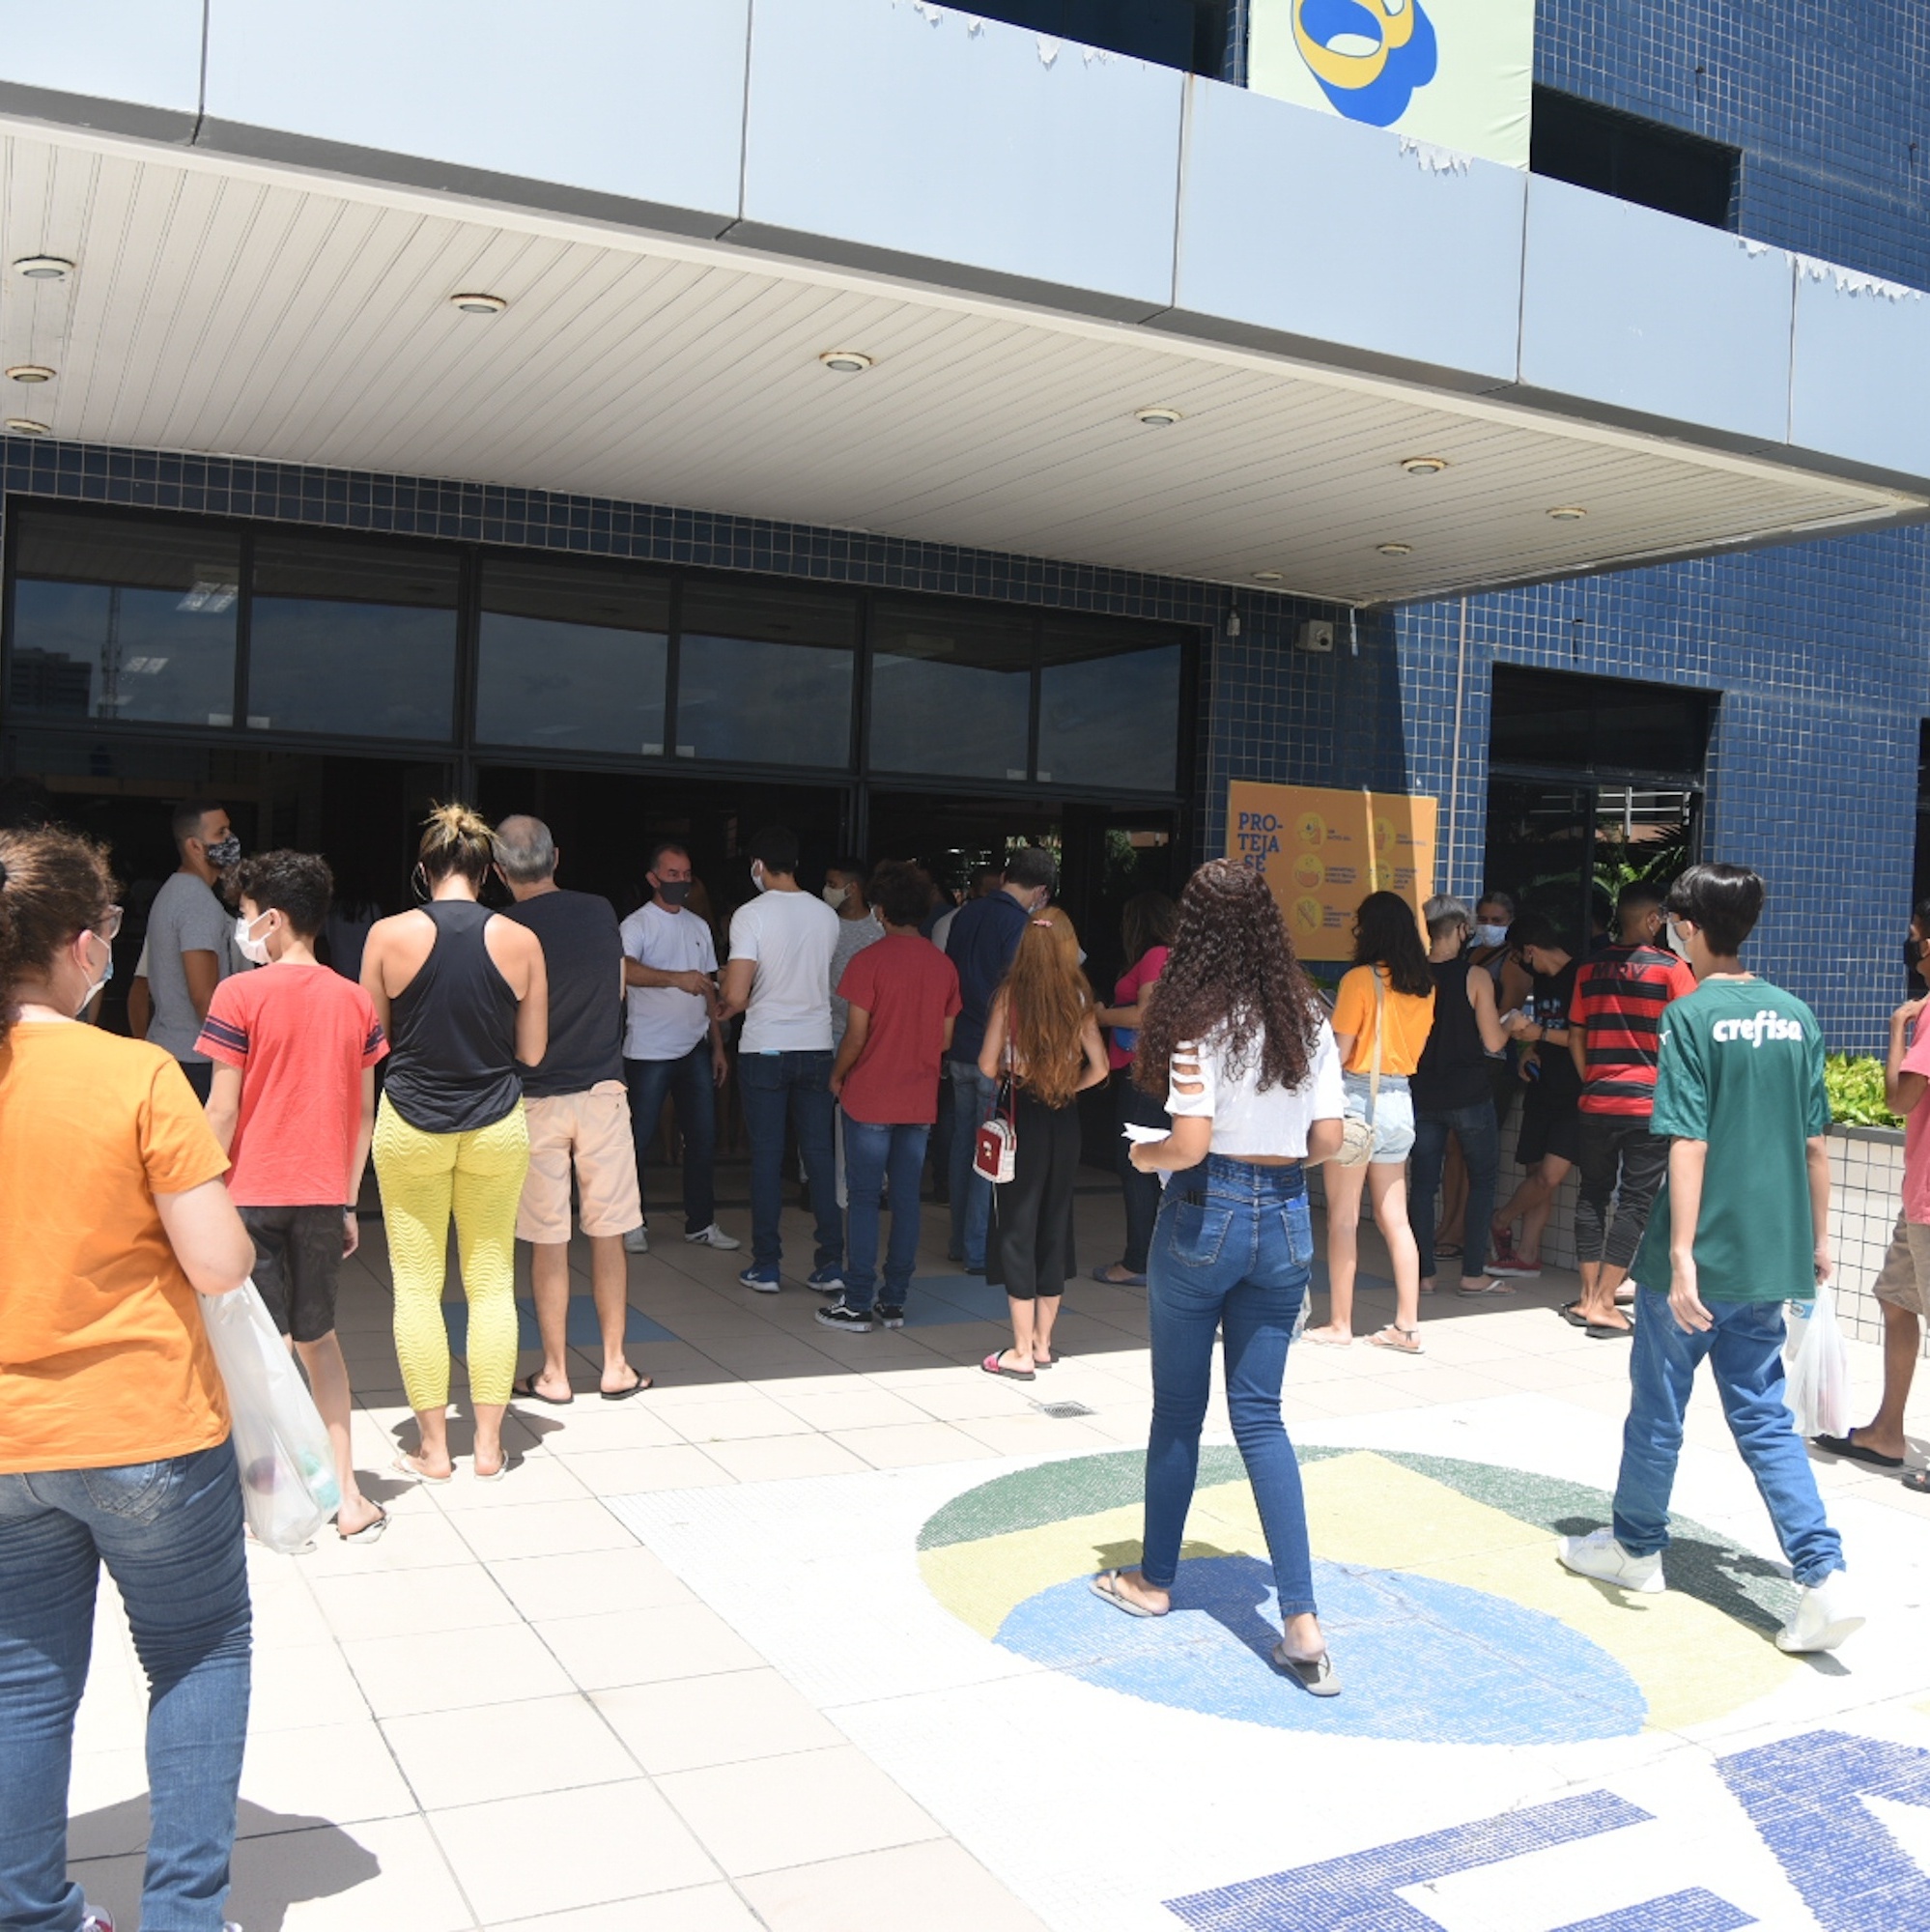 UNINASSAU Campina Grande oferece 1,7 mil vagas em 39 cursos gratuitos